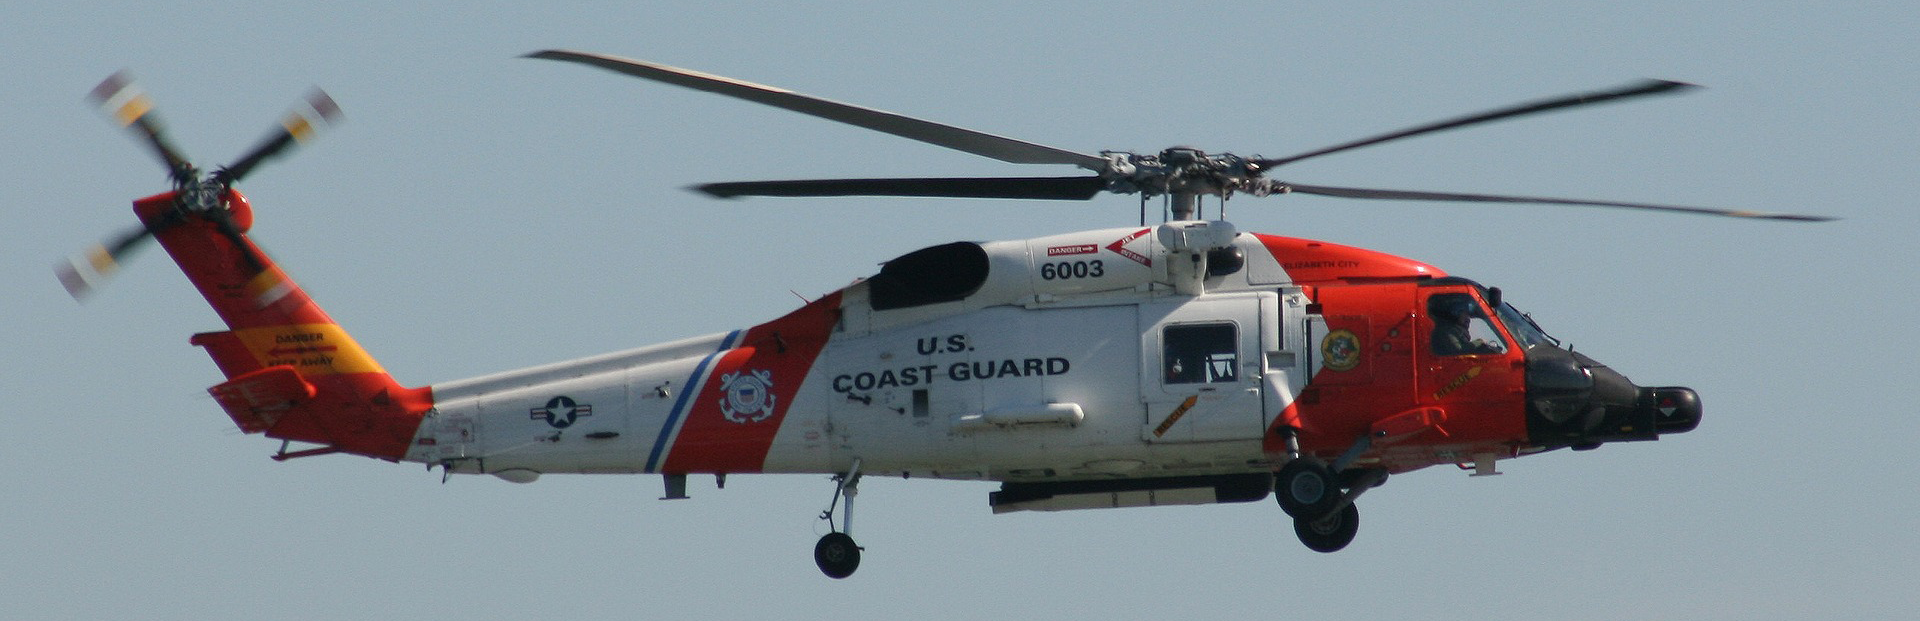 coast-guard-1920x621.png